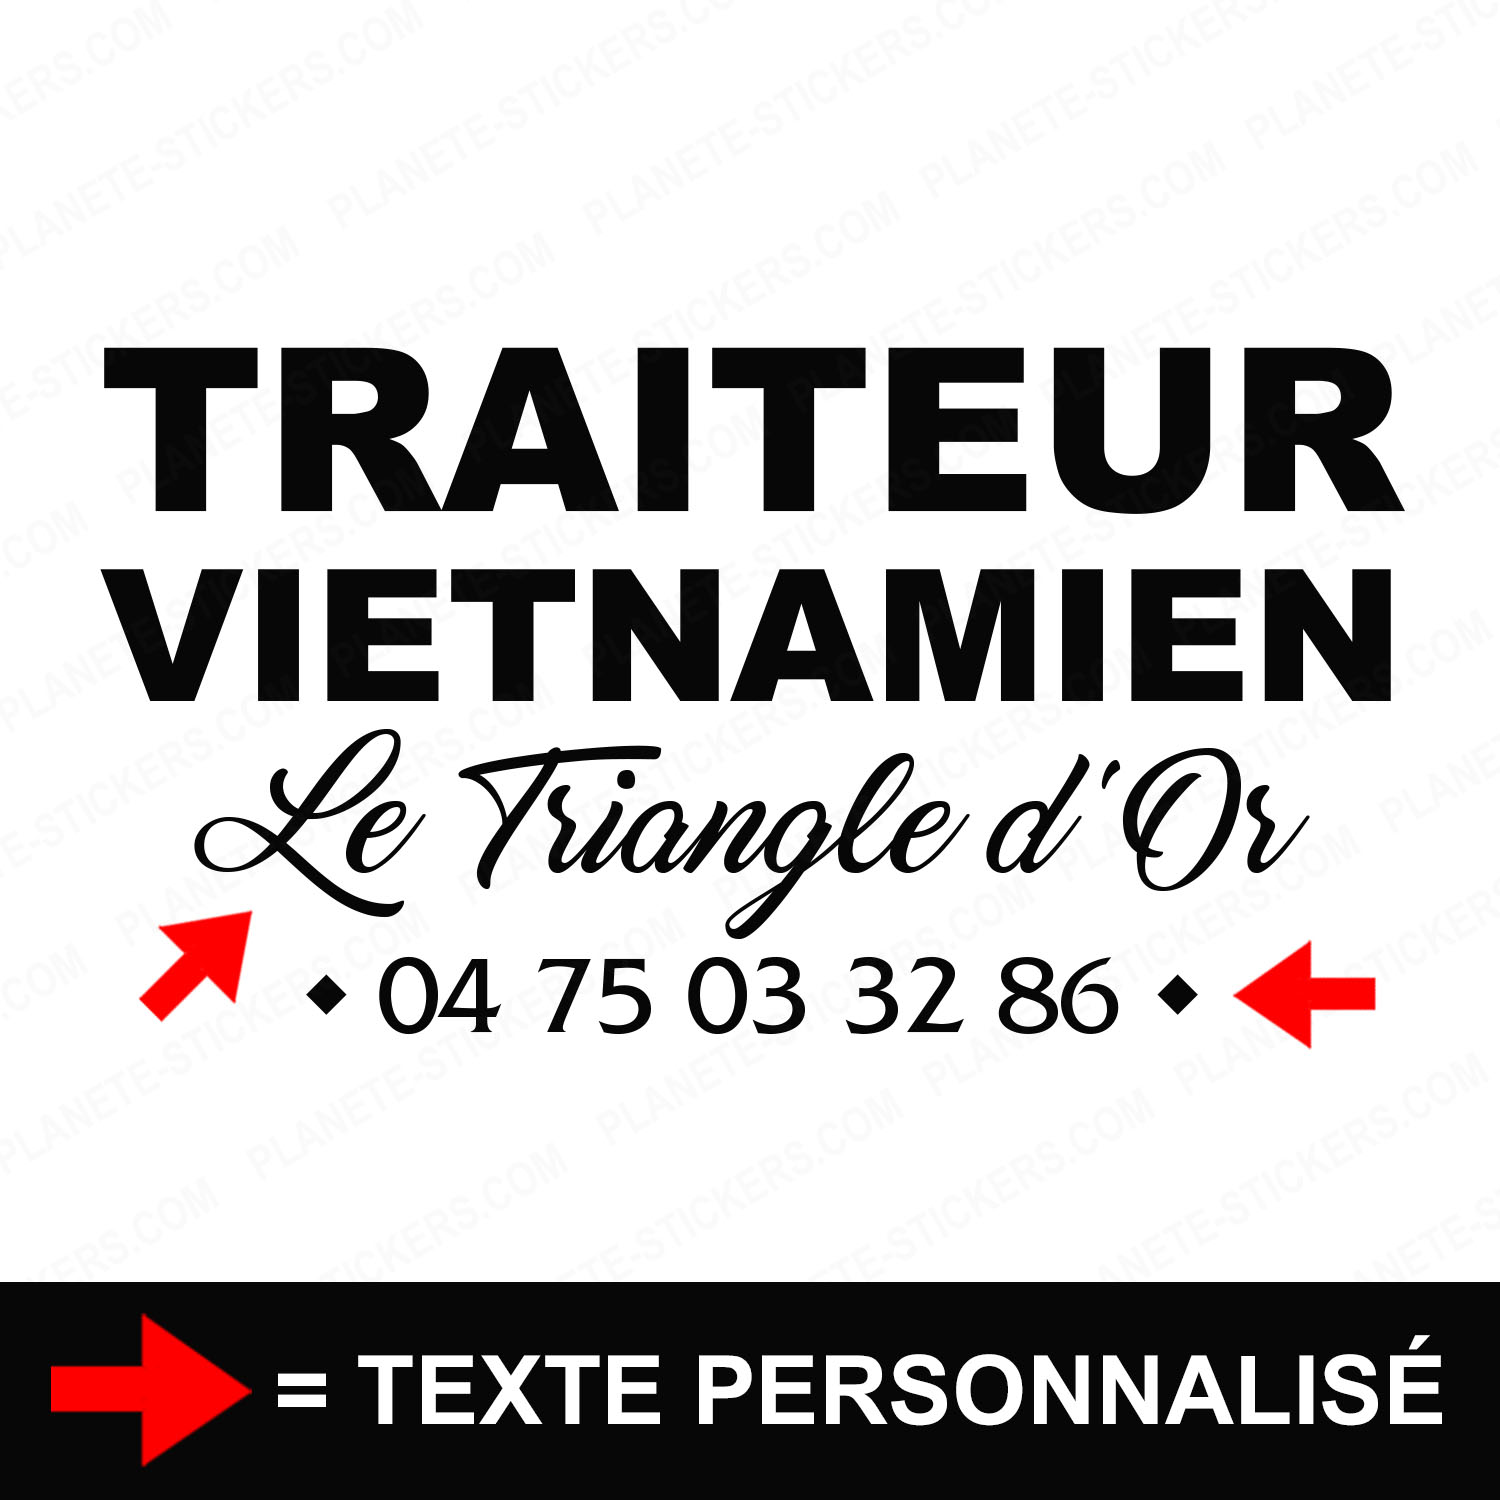 ref23traiteurvitrine-stickers-traiteur-vietnamien-vitrine-sticker-personnalisé-autocollant-pro-restaurateur-restaurant-asiatique-vitre-professionnel-écriture-2